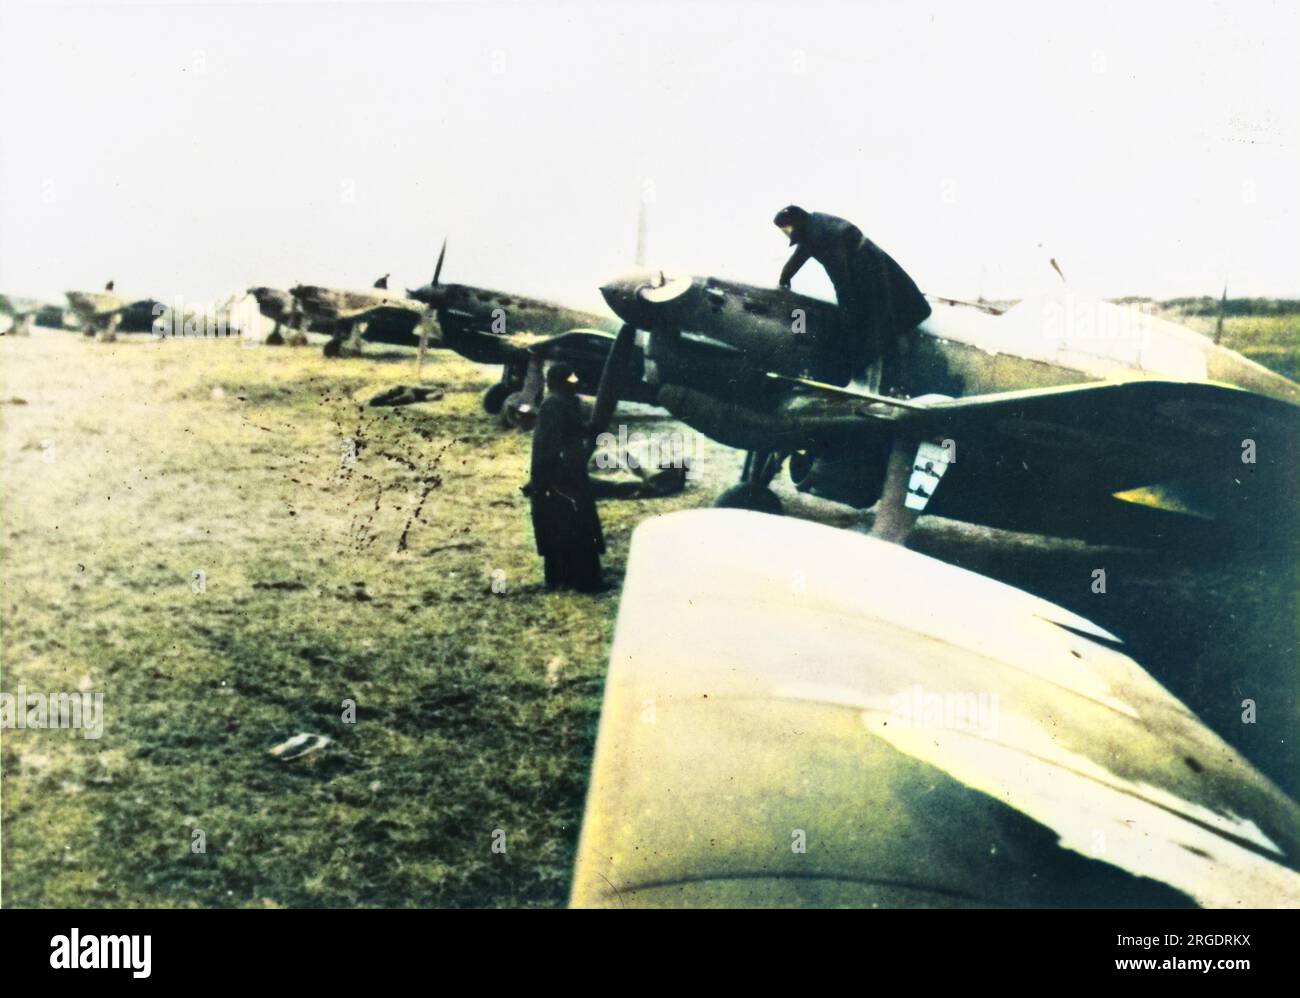 Aviones de combate franceses MS-406 construidos por Morane-Saunier para la fuerza aérea durante la Segunda Guerra Mundial Foto de stock